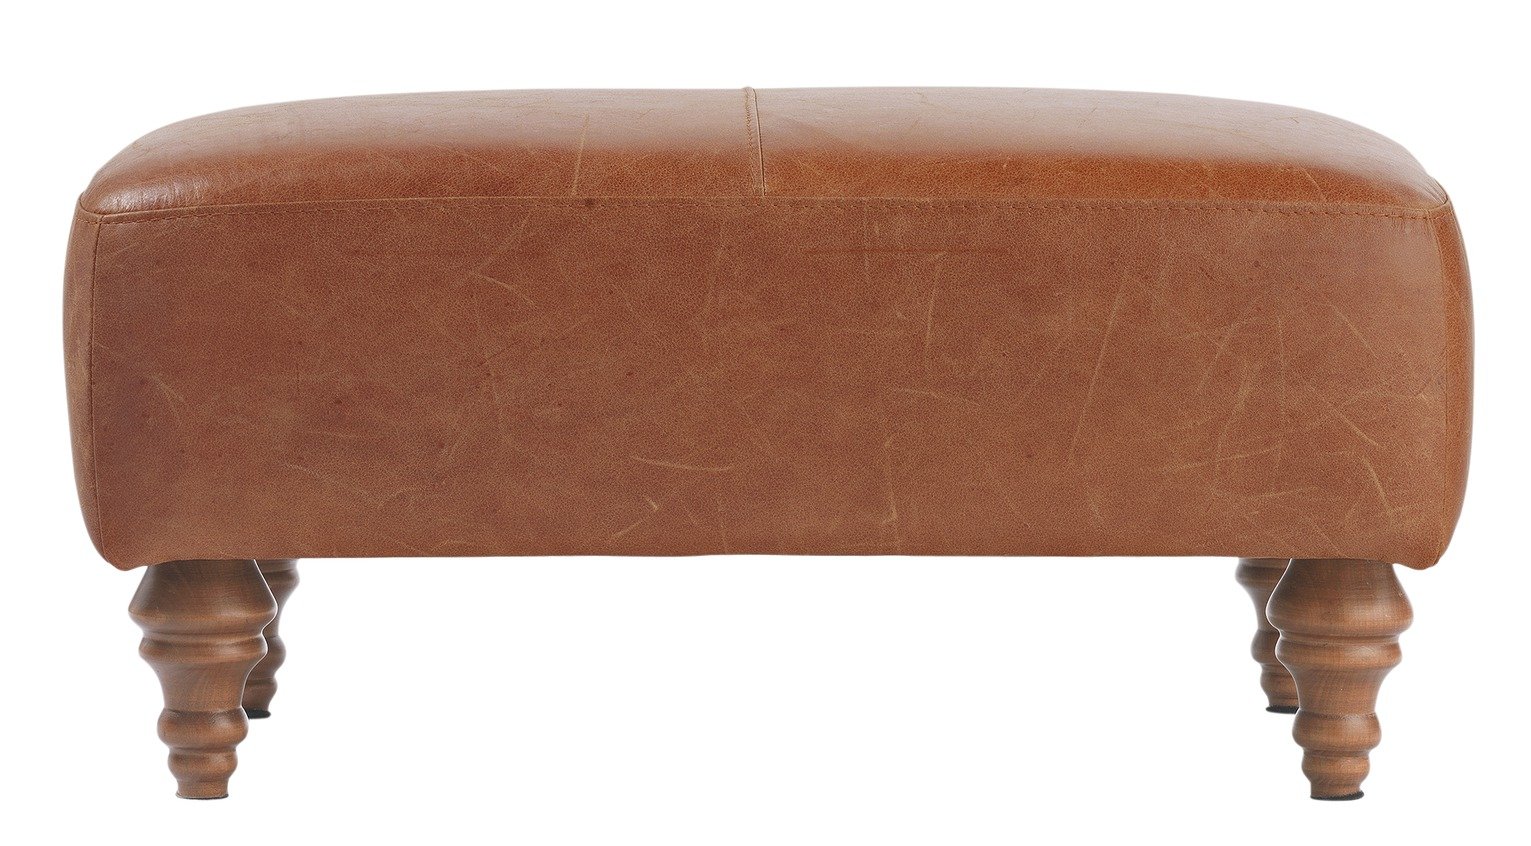 Argos Home Livingston Leather Footstool - Tan (5533132) | Argos Price